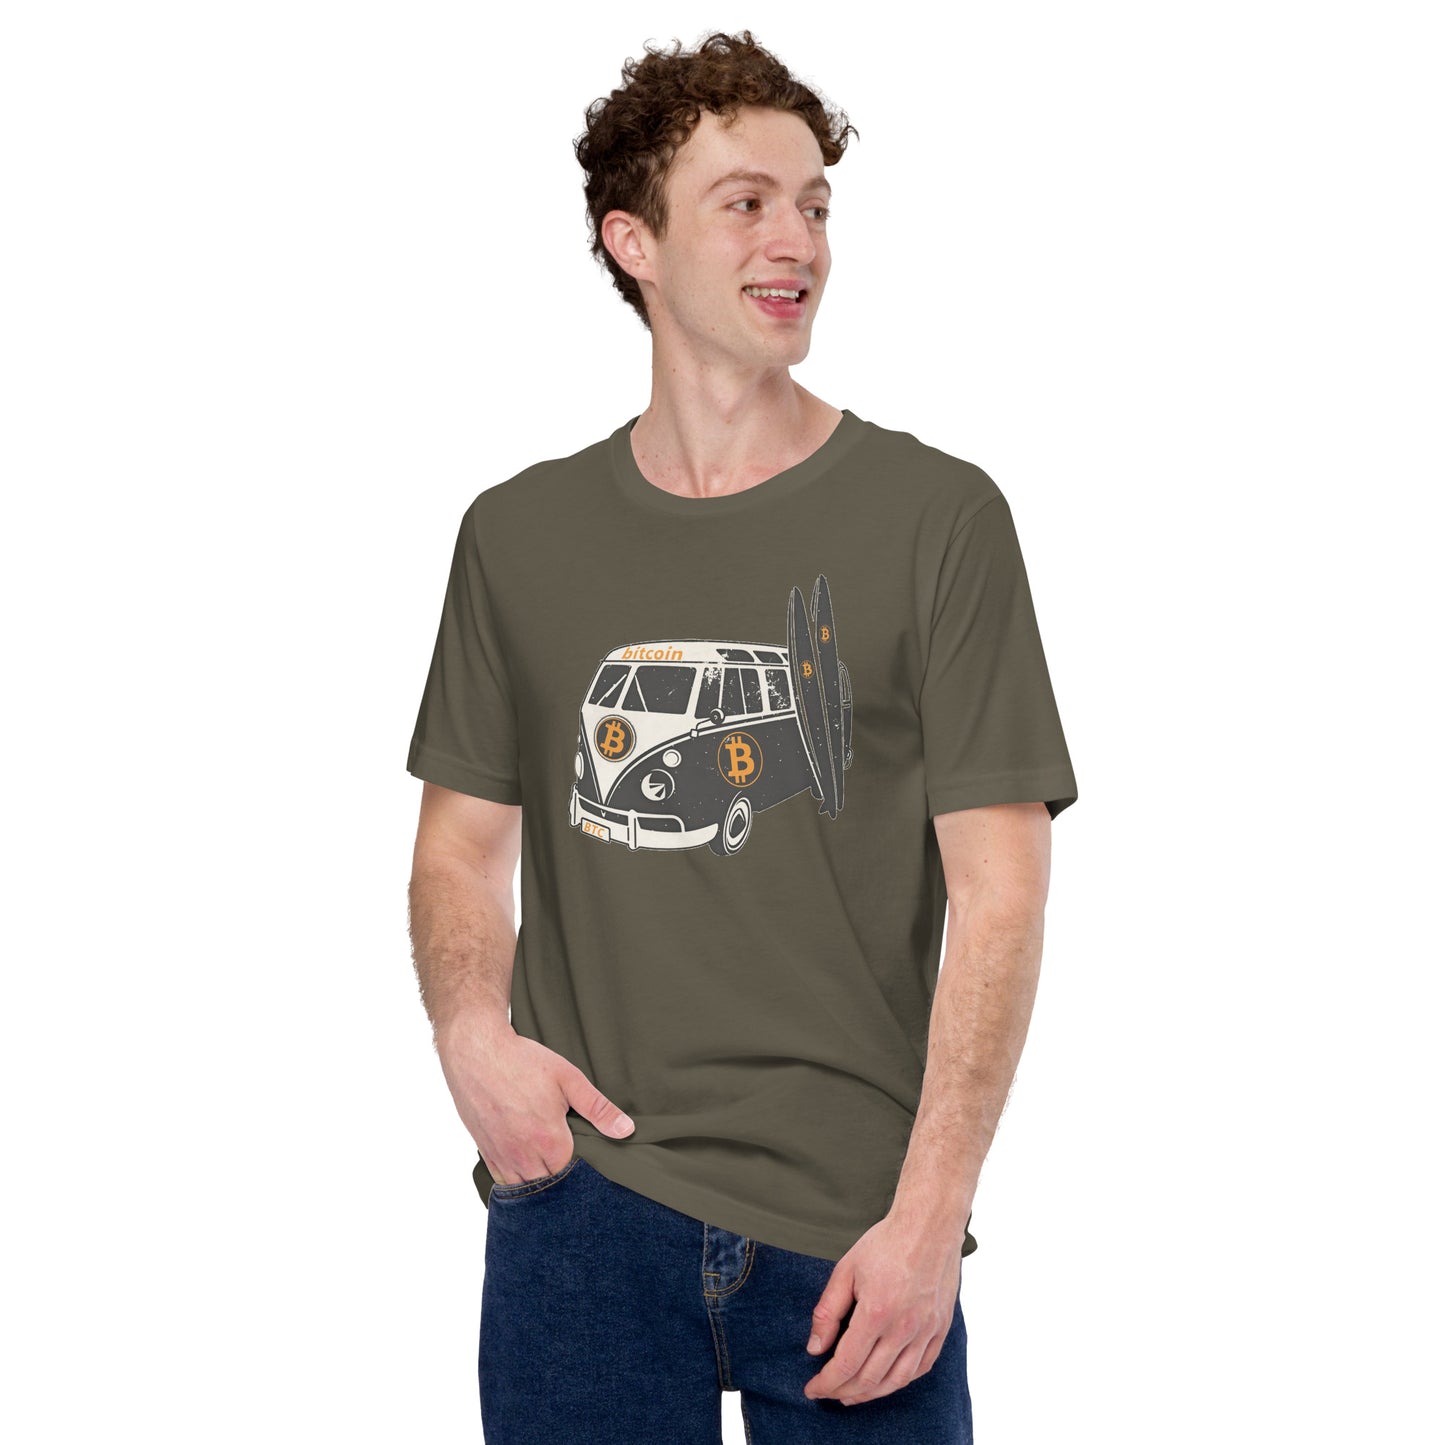 Bitcoin Lagun T-Shirt